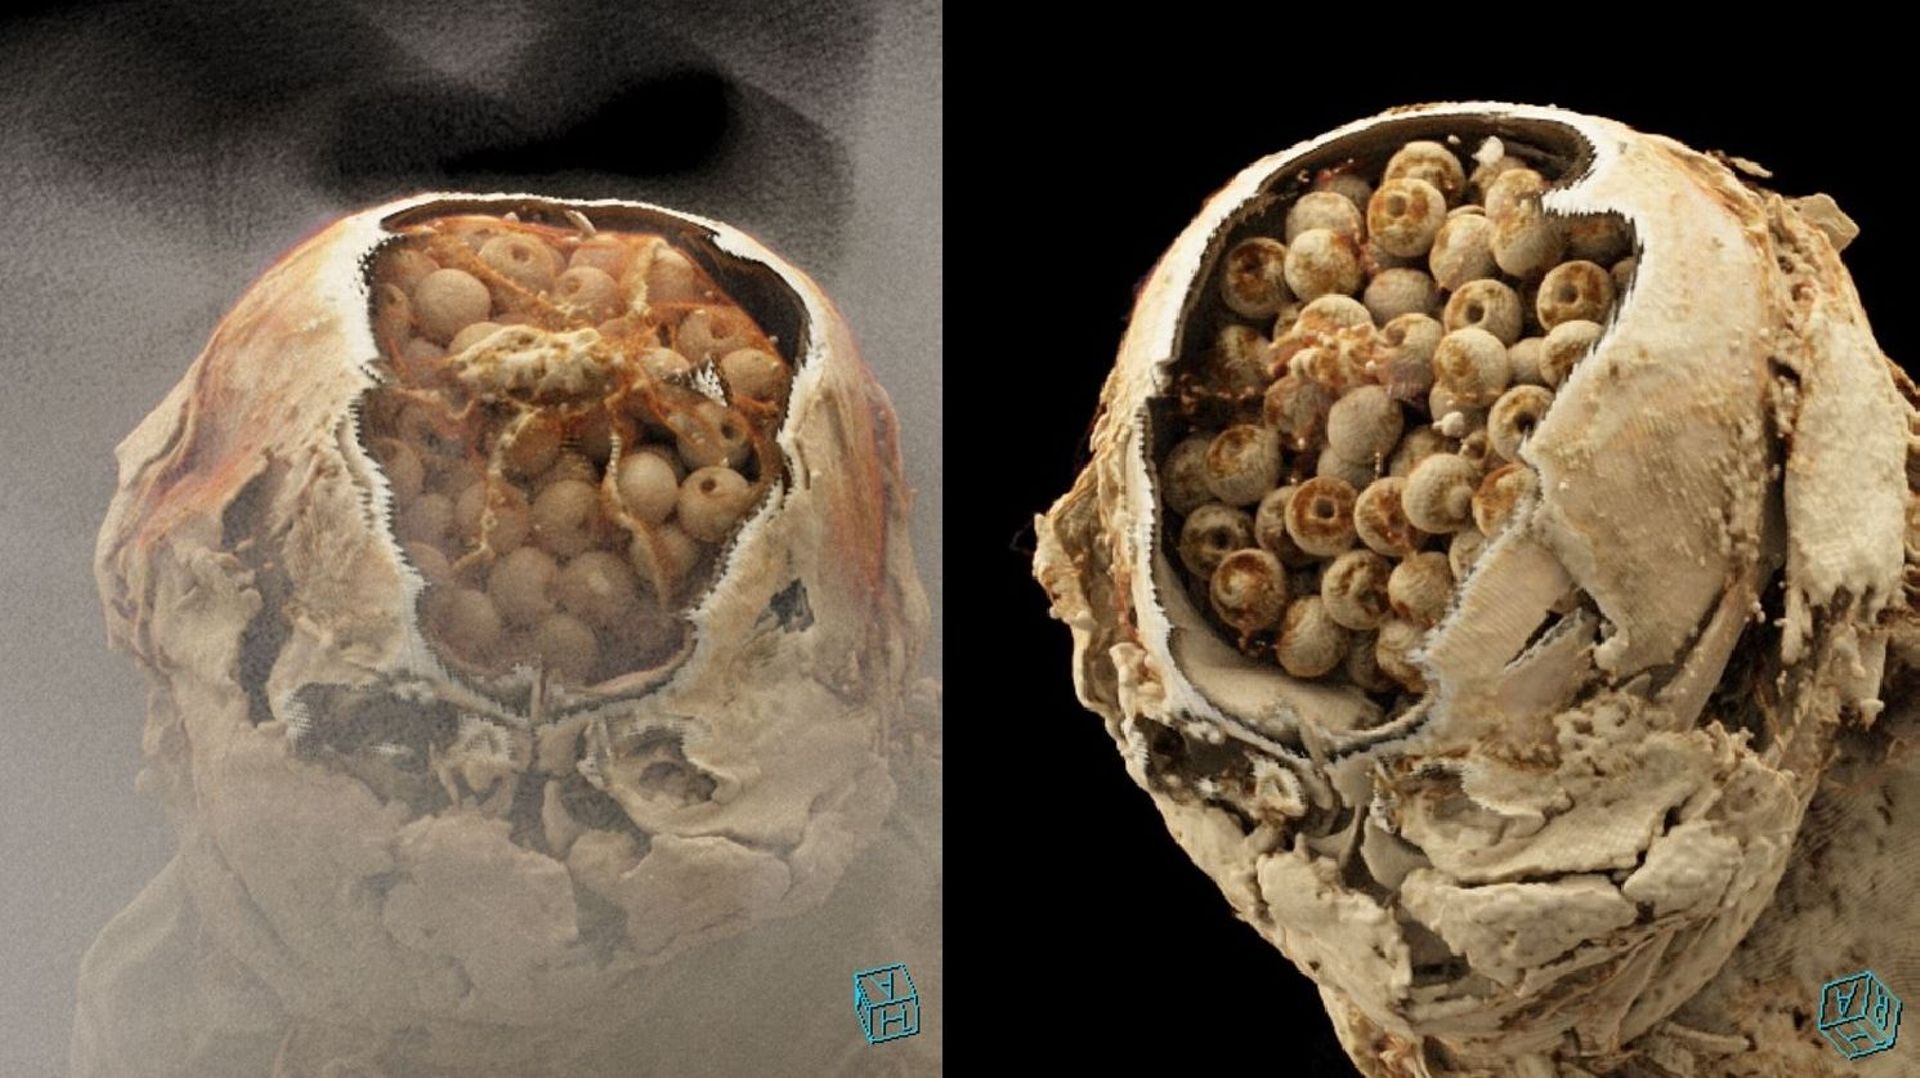 Des images 3d reconstituées à partir du scanner montrent la forme des billes contenues dans le crâne de la momie Inca.